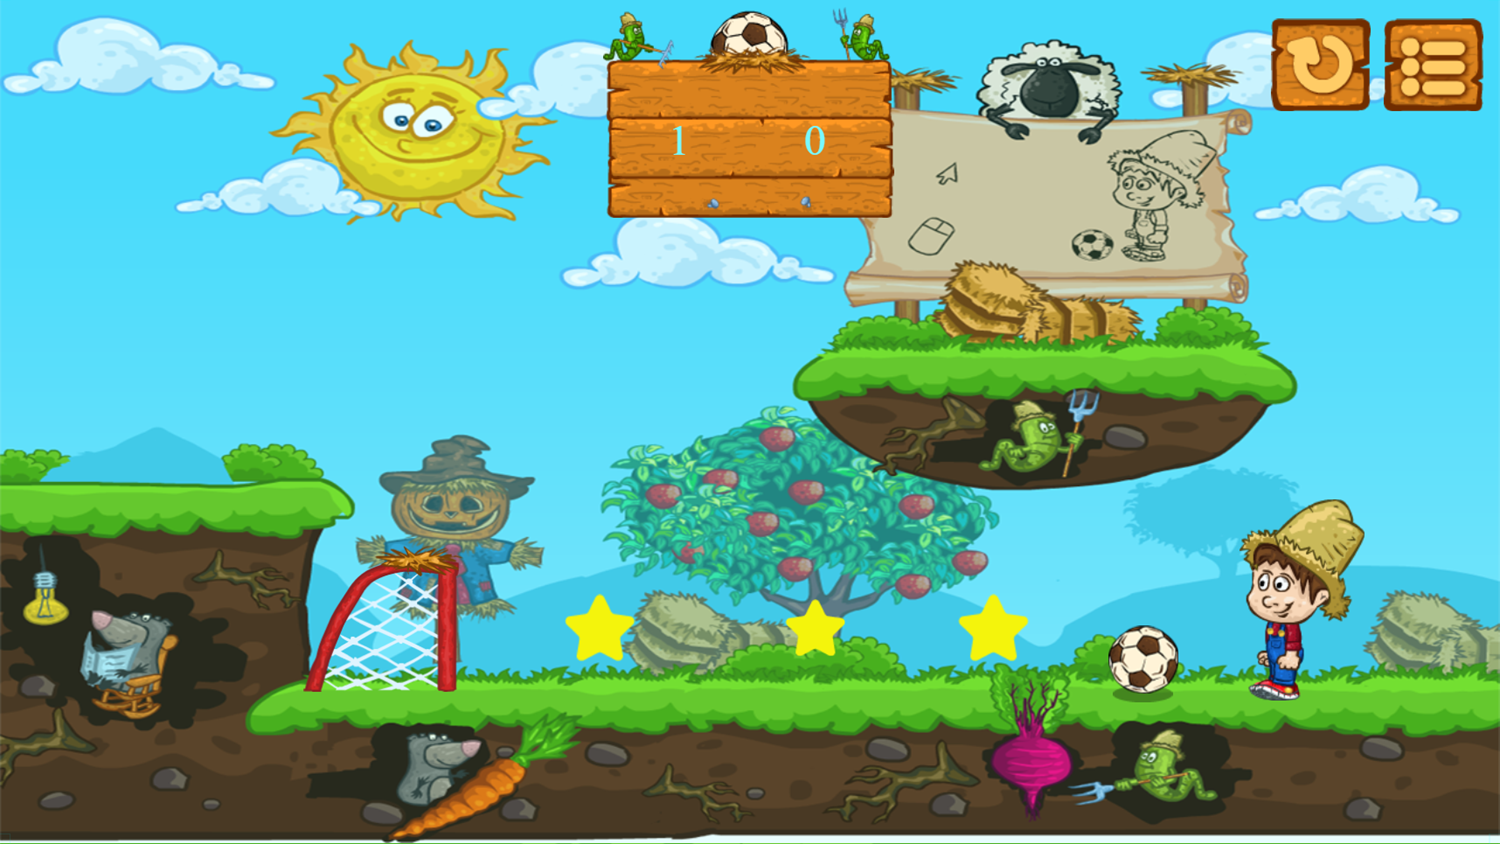 Soccer Farm Game Level Start Screenshot.